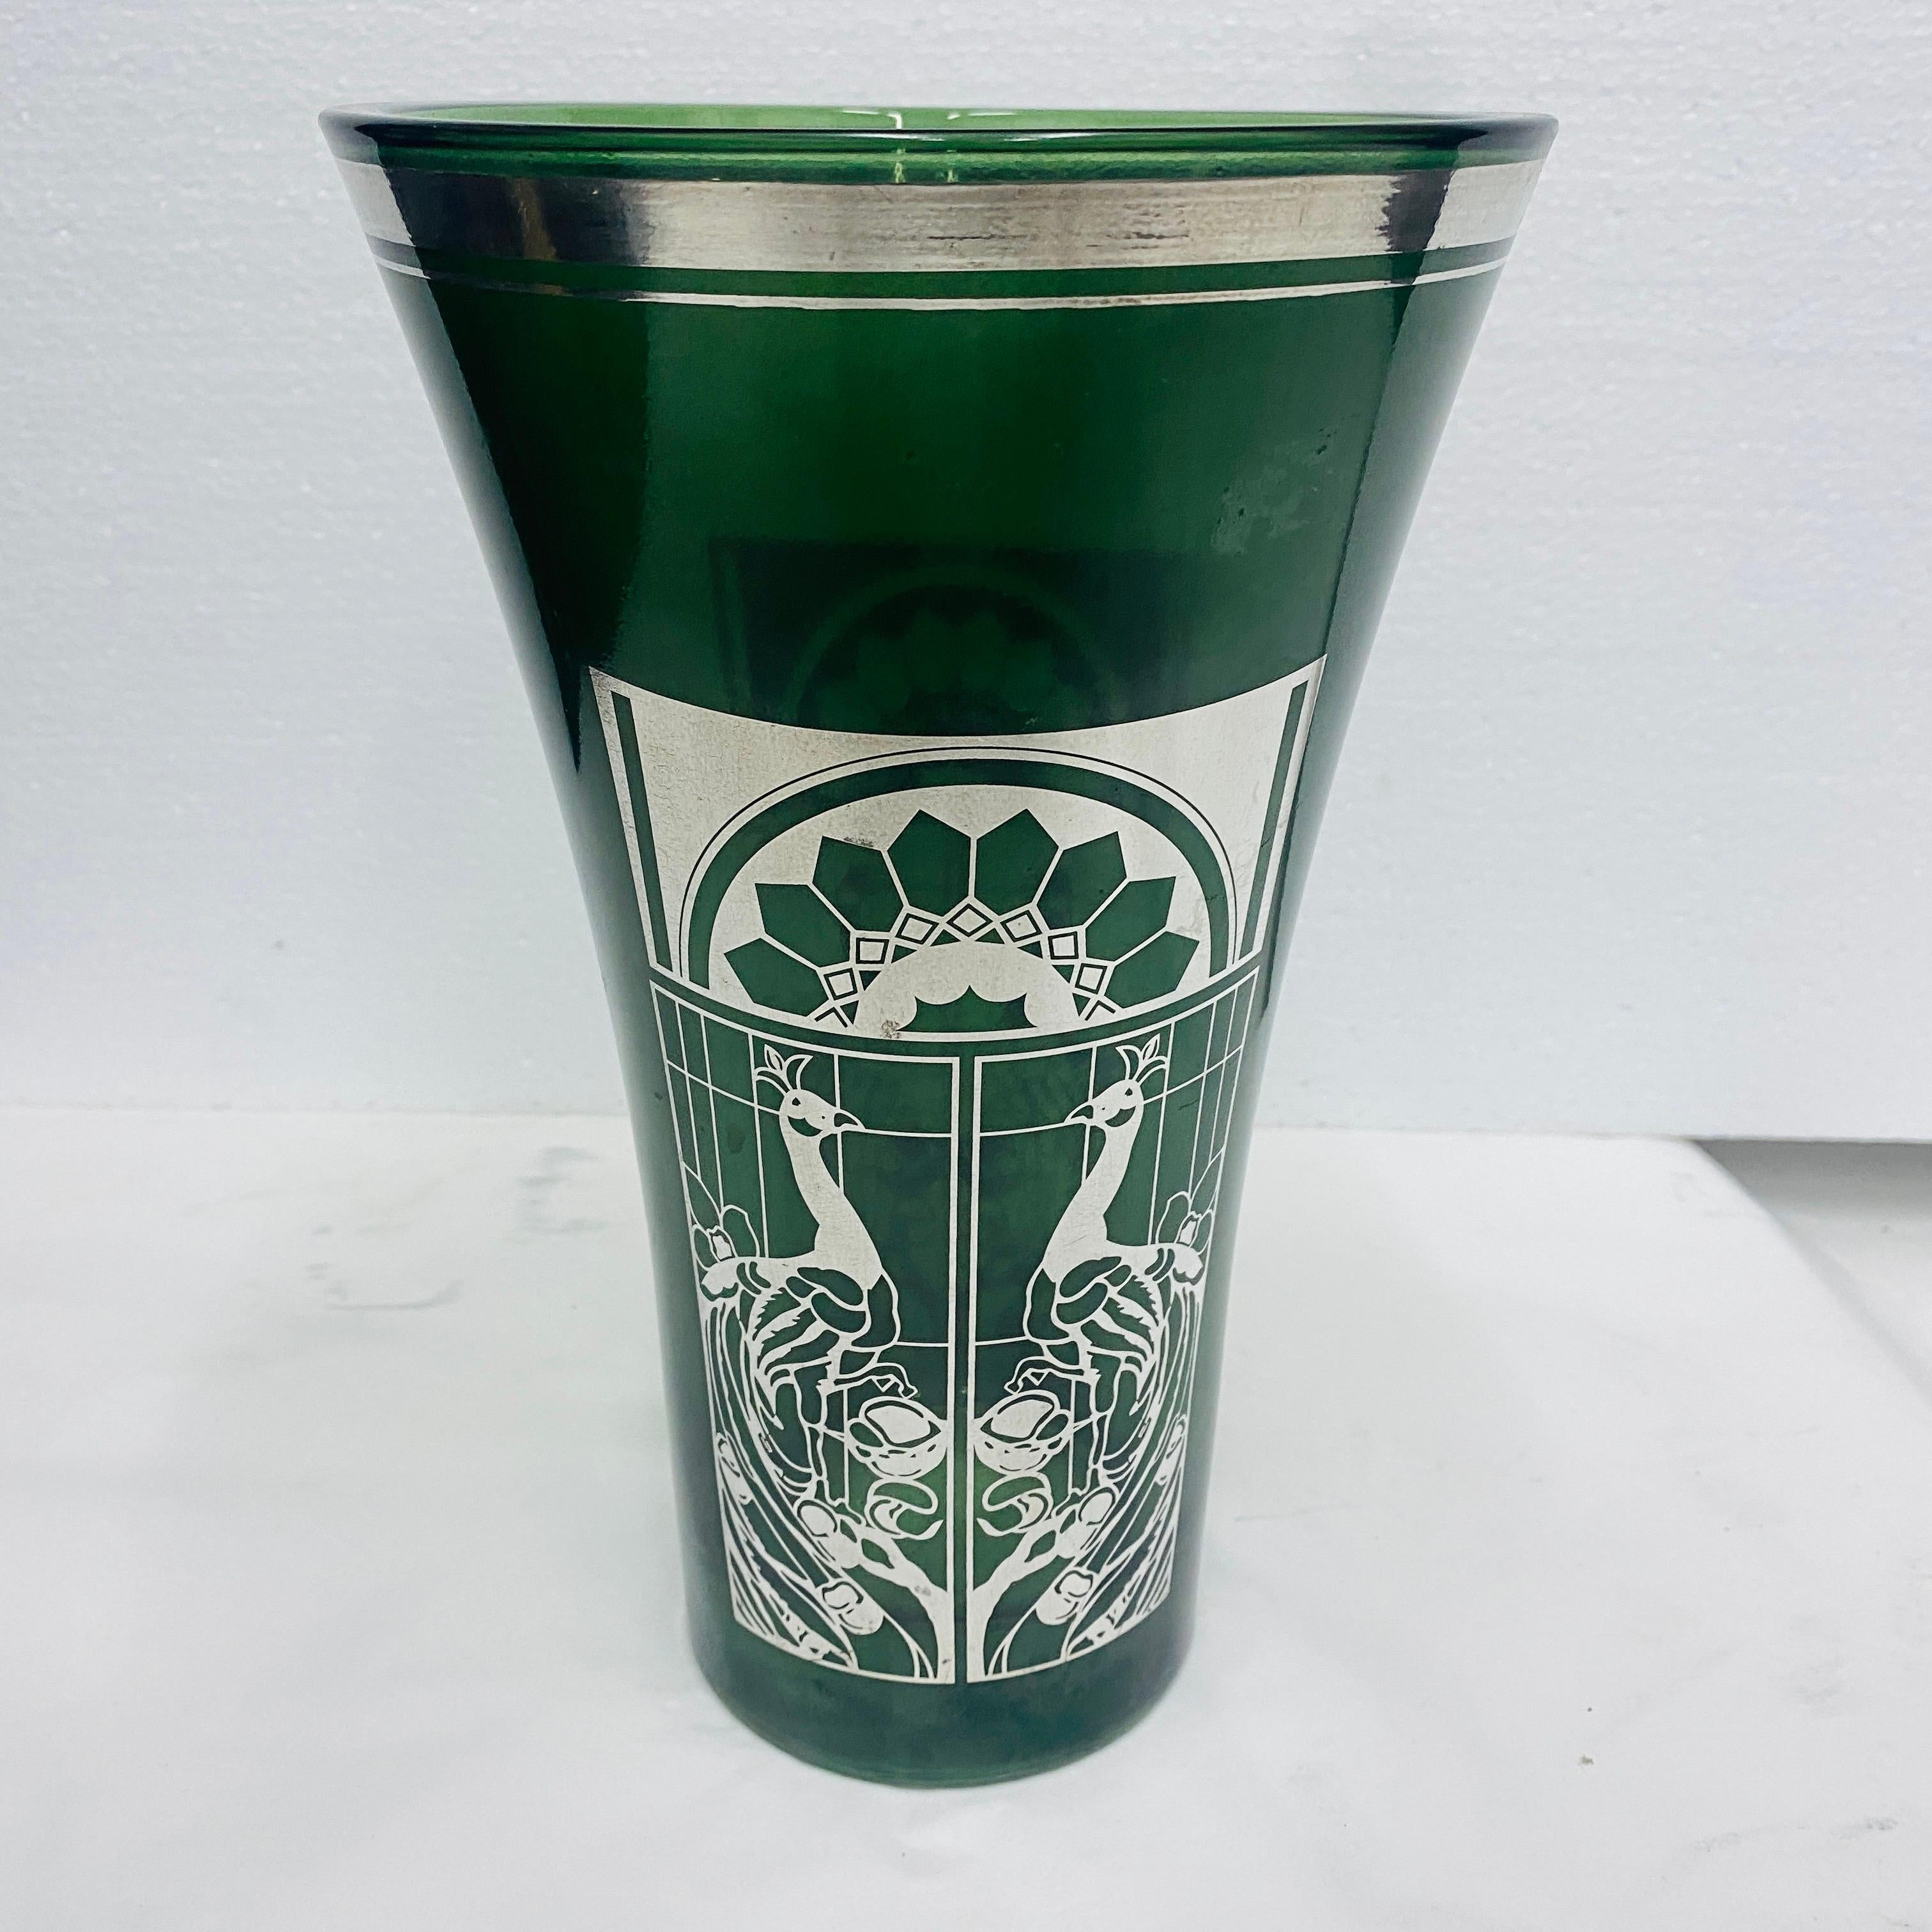 Diese italienische Vase aus den frühen 1900er Jahren verbindet die Eleganz von grünem Glas mit der Raffinesse von Silberdetails. Die Vase weist die für den Jugendstil charakteristischen organischen Formen und komplizierten Ornamente auf und fängt in